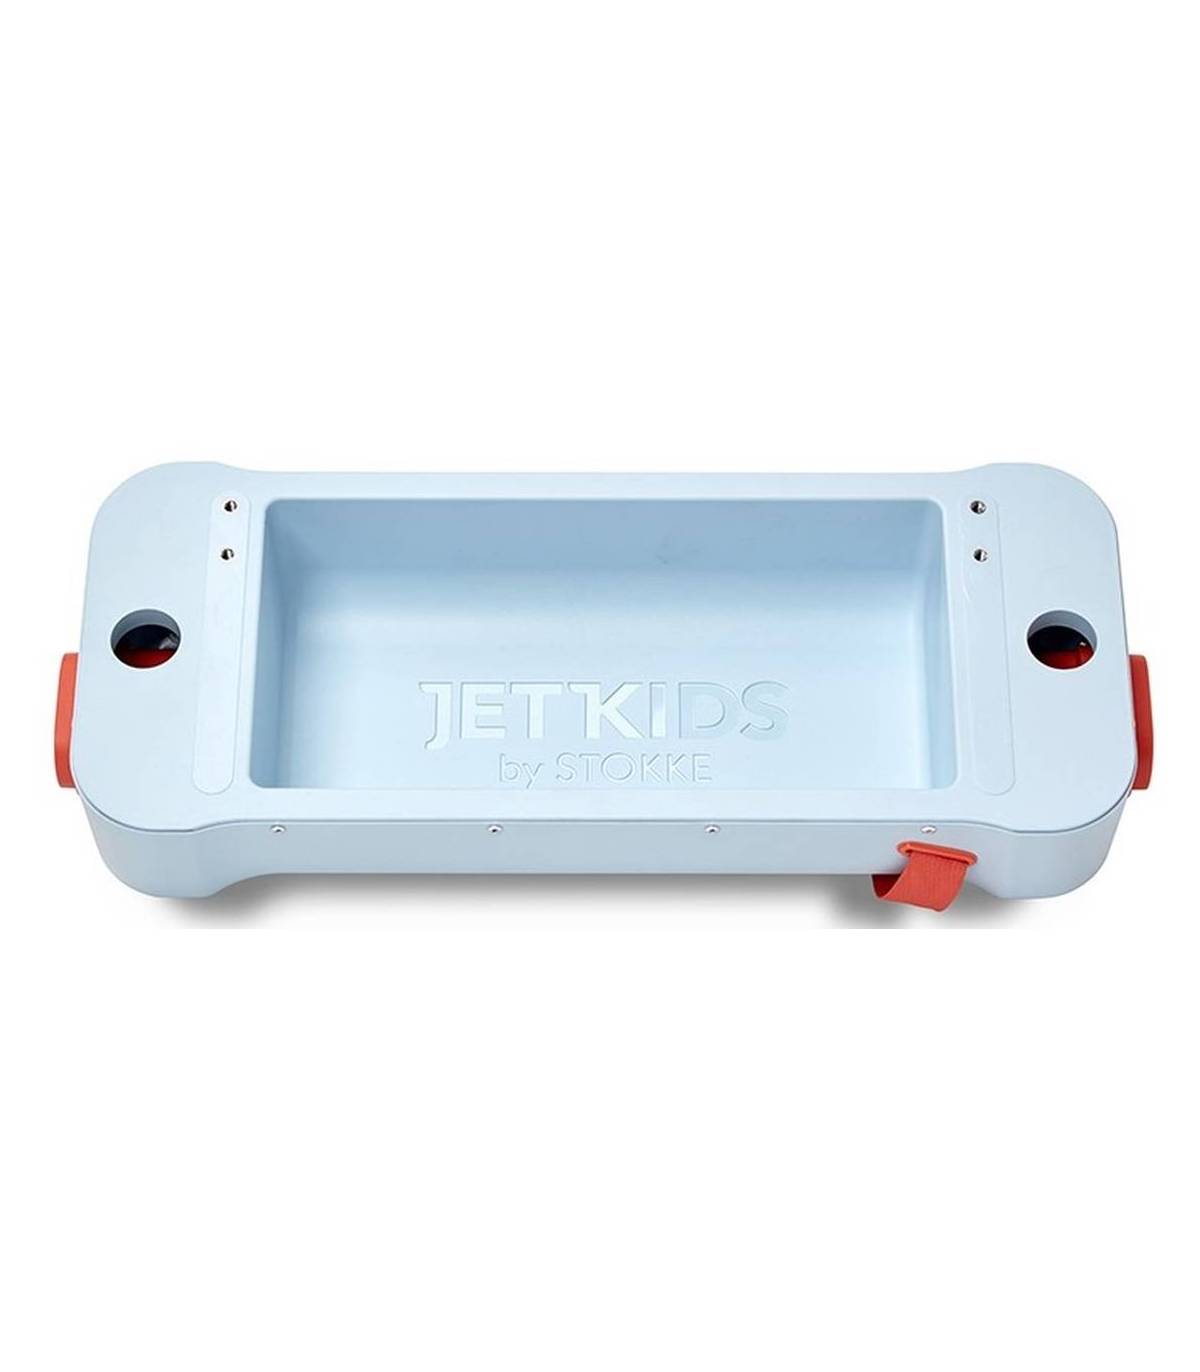 Stokke JetKids Bedbox (Kinder-Koffer verwandelbar in Flugbett)